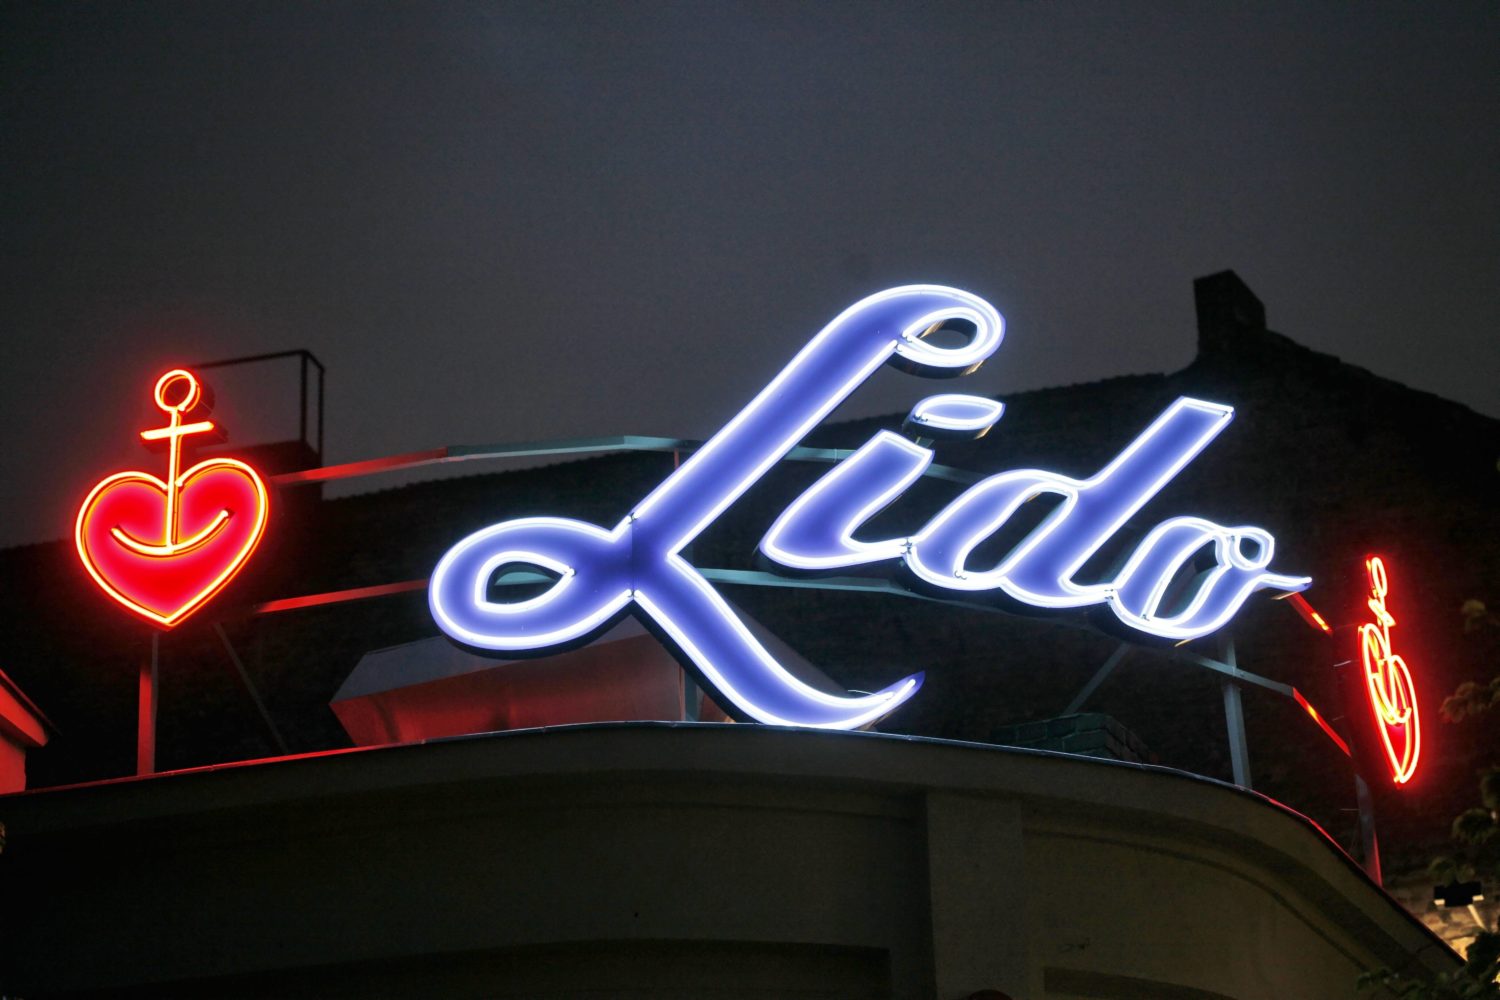 Das Lido ist einer der angesagtesten Clubs für Konzerte von Indie-Rock bis Elektro-Pop in Kreuzberg. Ob es die aktuelle Situation definitiv überstehen wird, ist unklar. Foto: tipArchiv